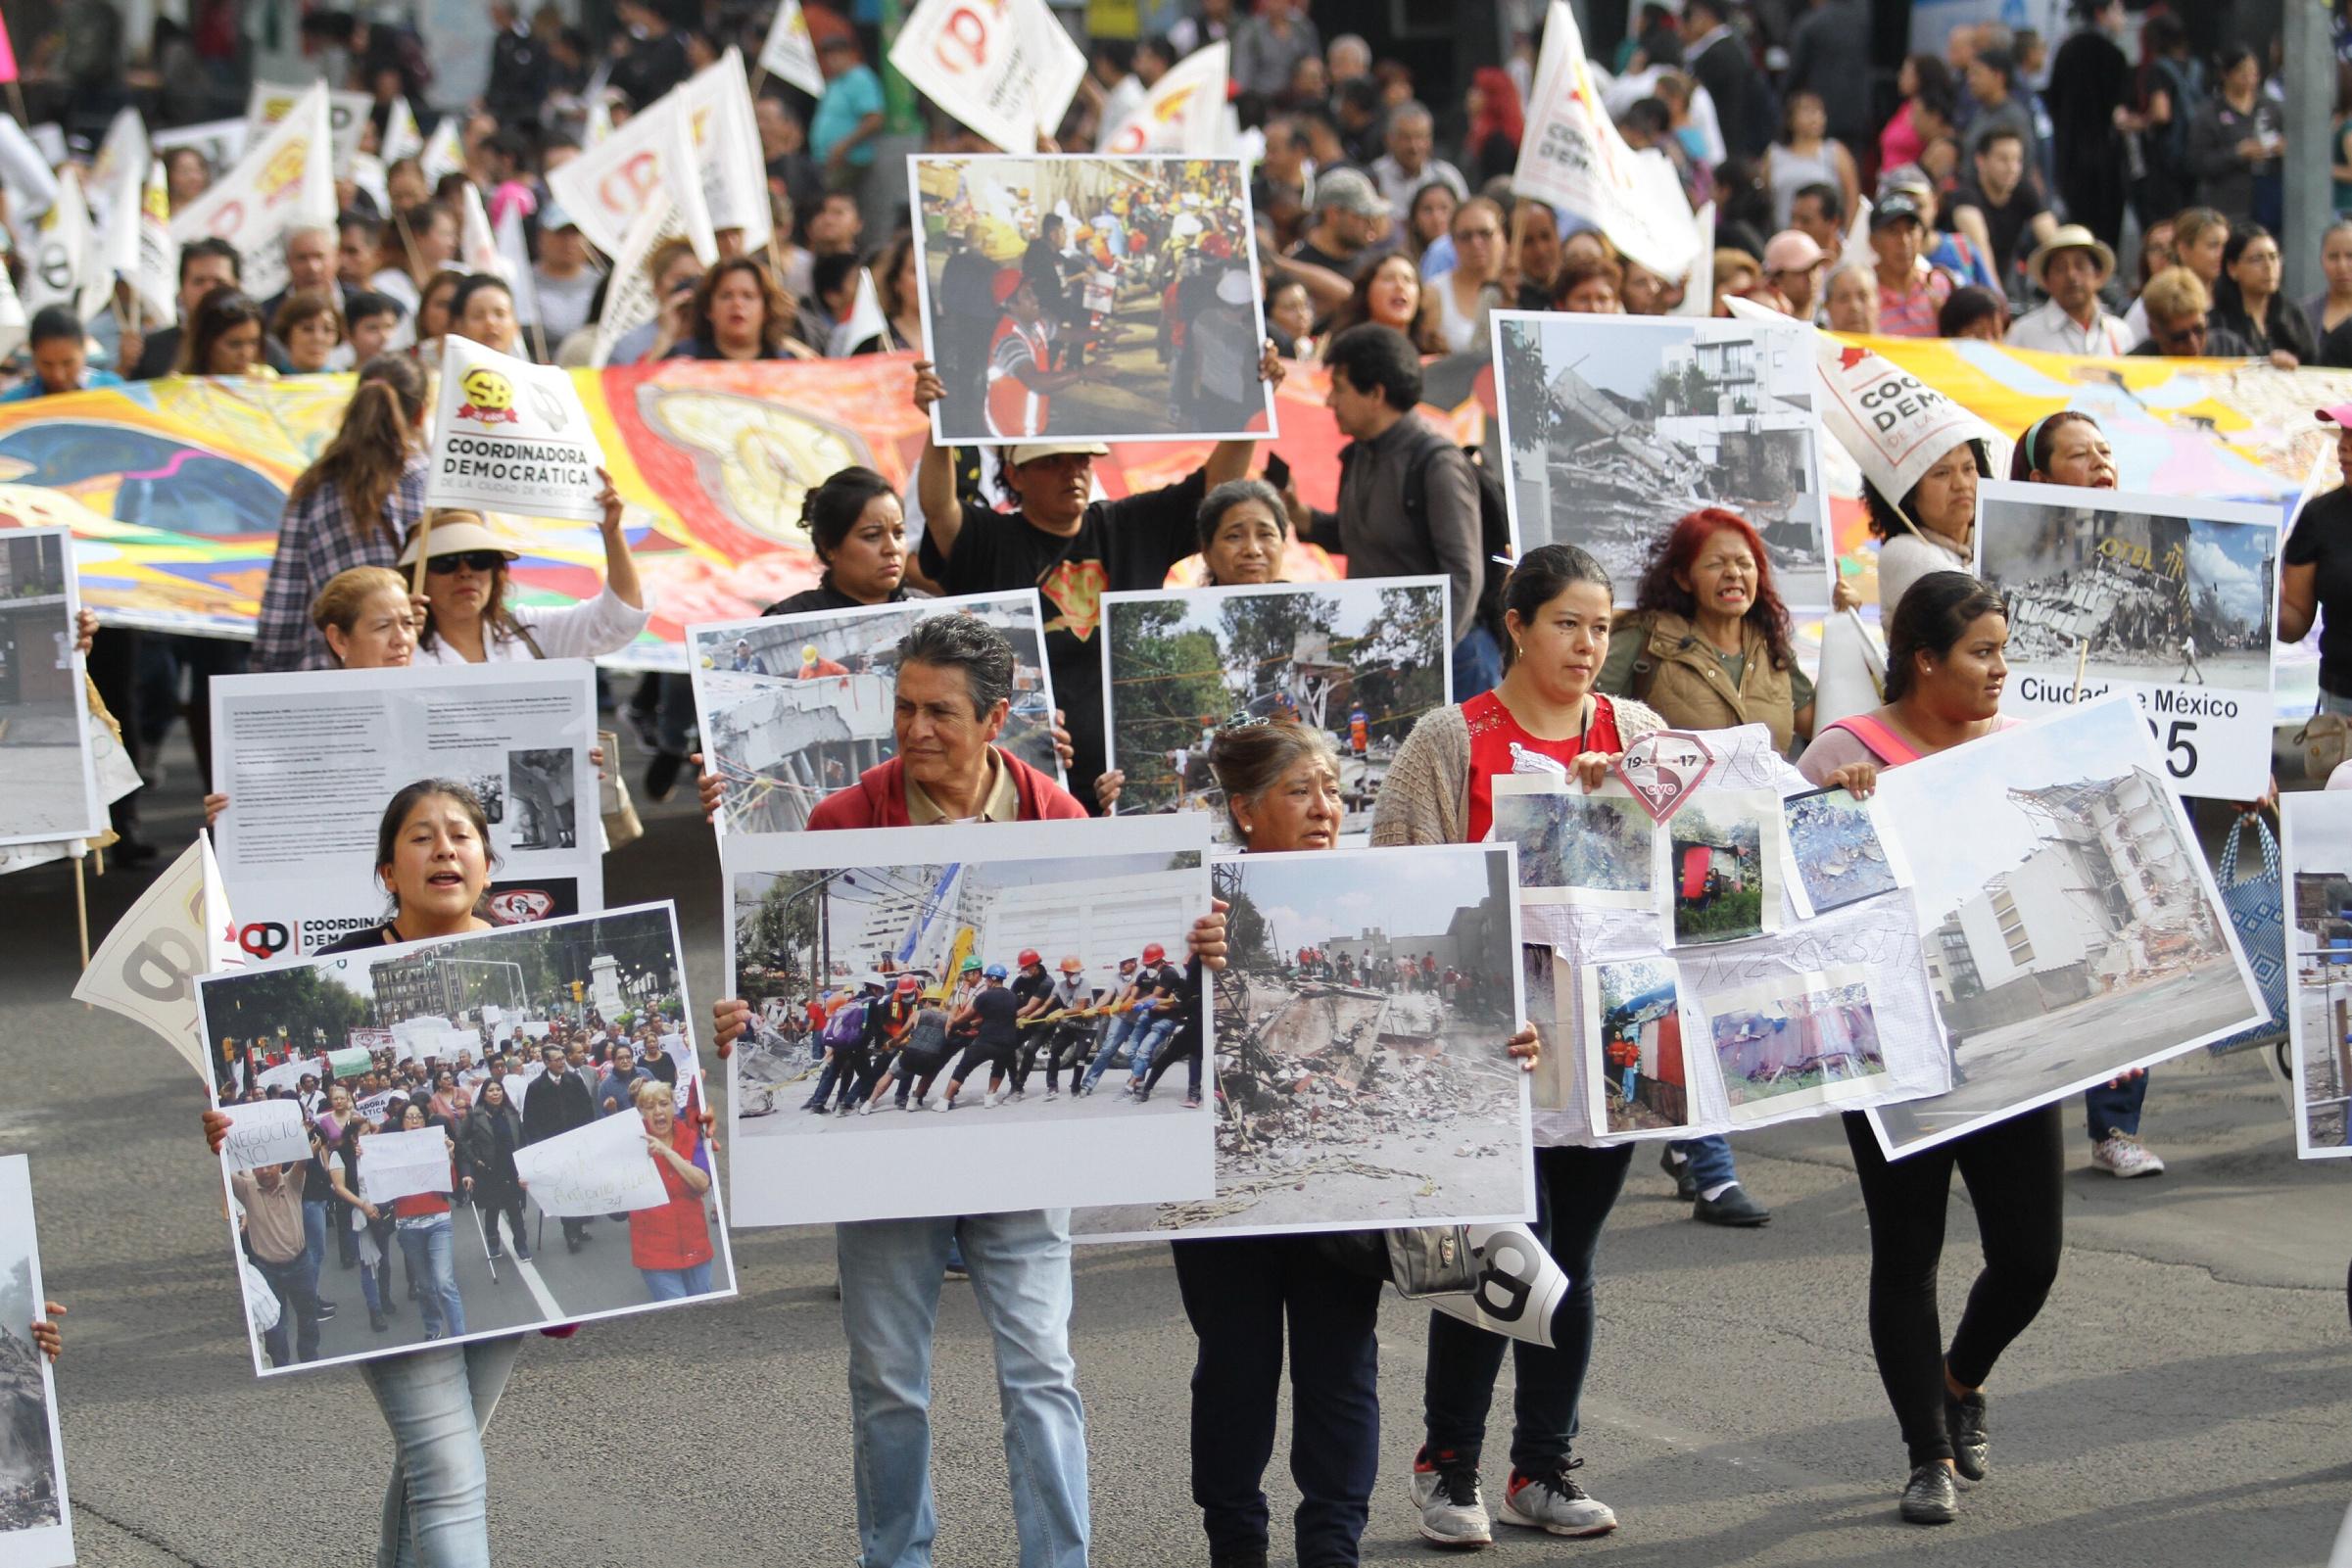 Llevan damnificados sus demandas al Zócalo